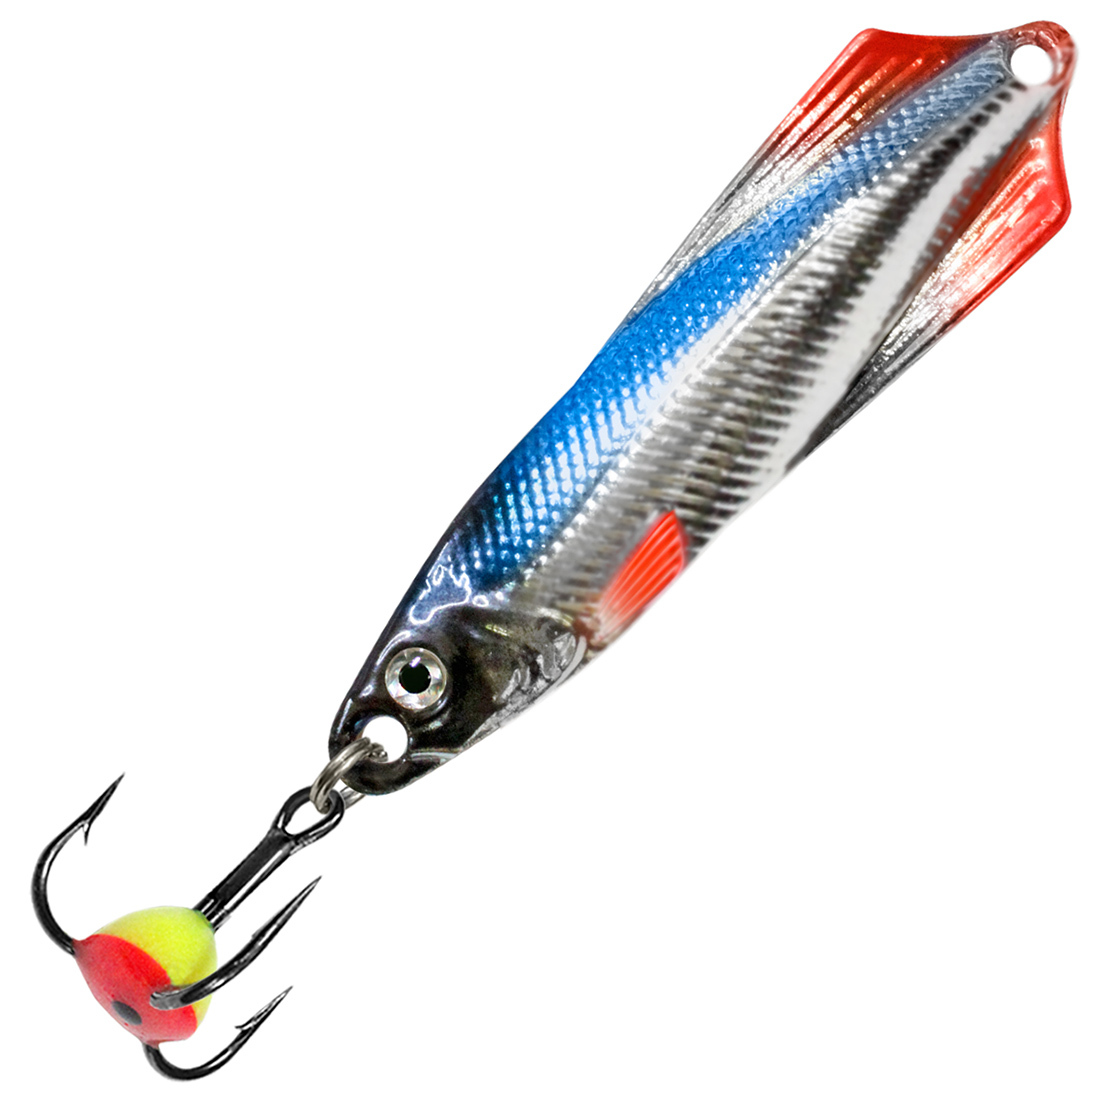 Блесна для рыбалки зимняя AQUA ГЛЮК 7,0g цвет 06 (серебро, синий и красный флюр) 1 штука.